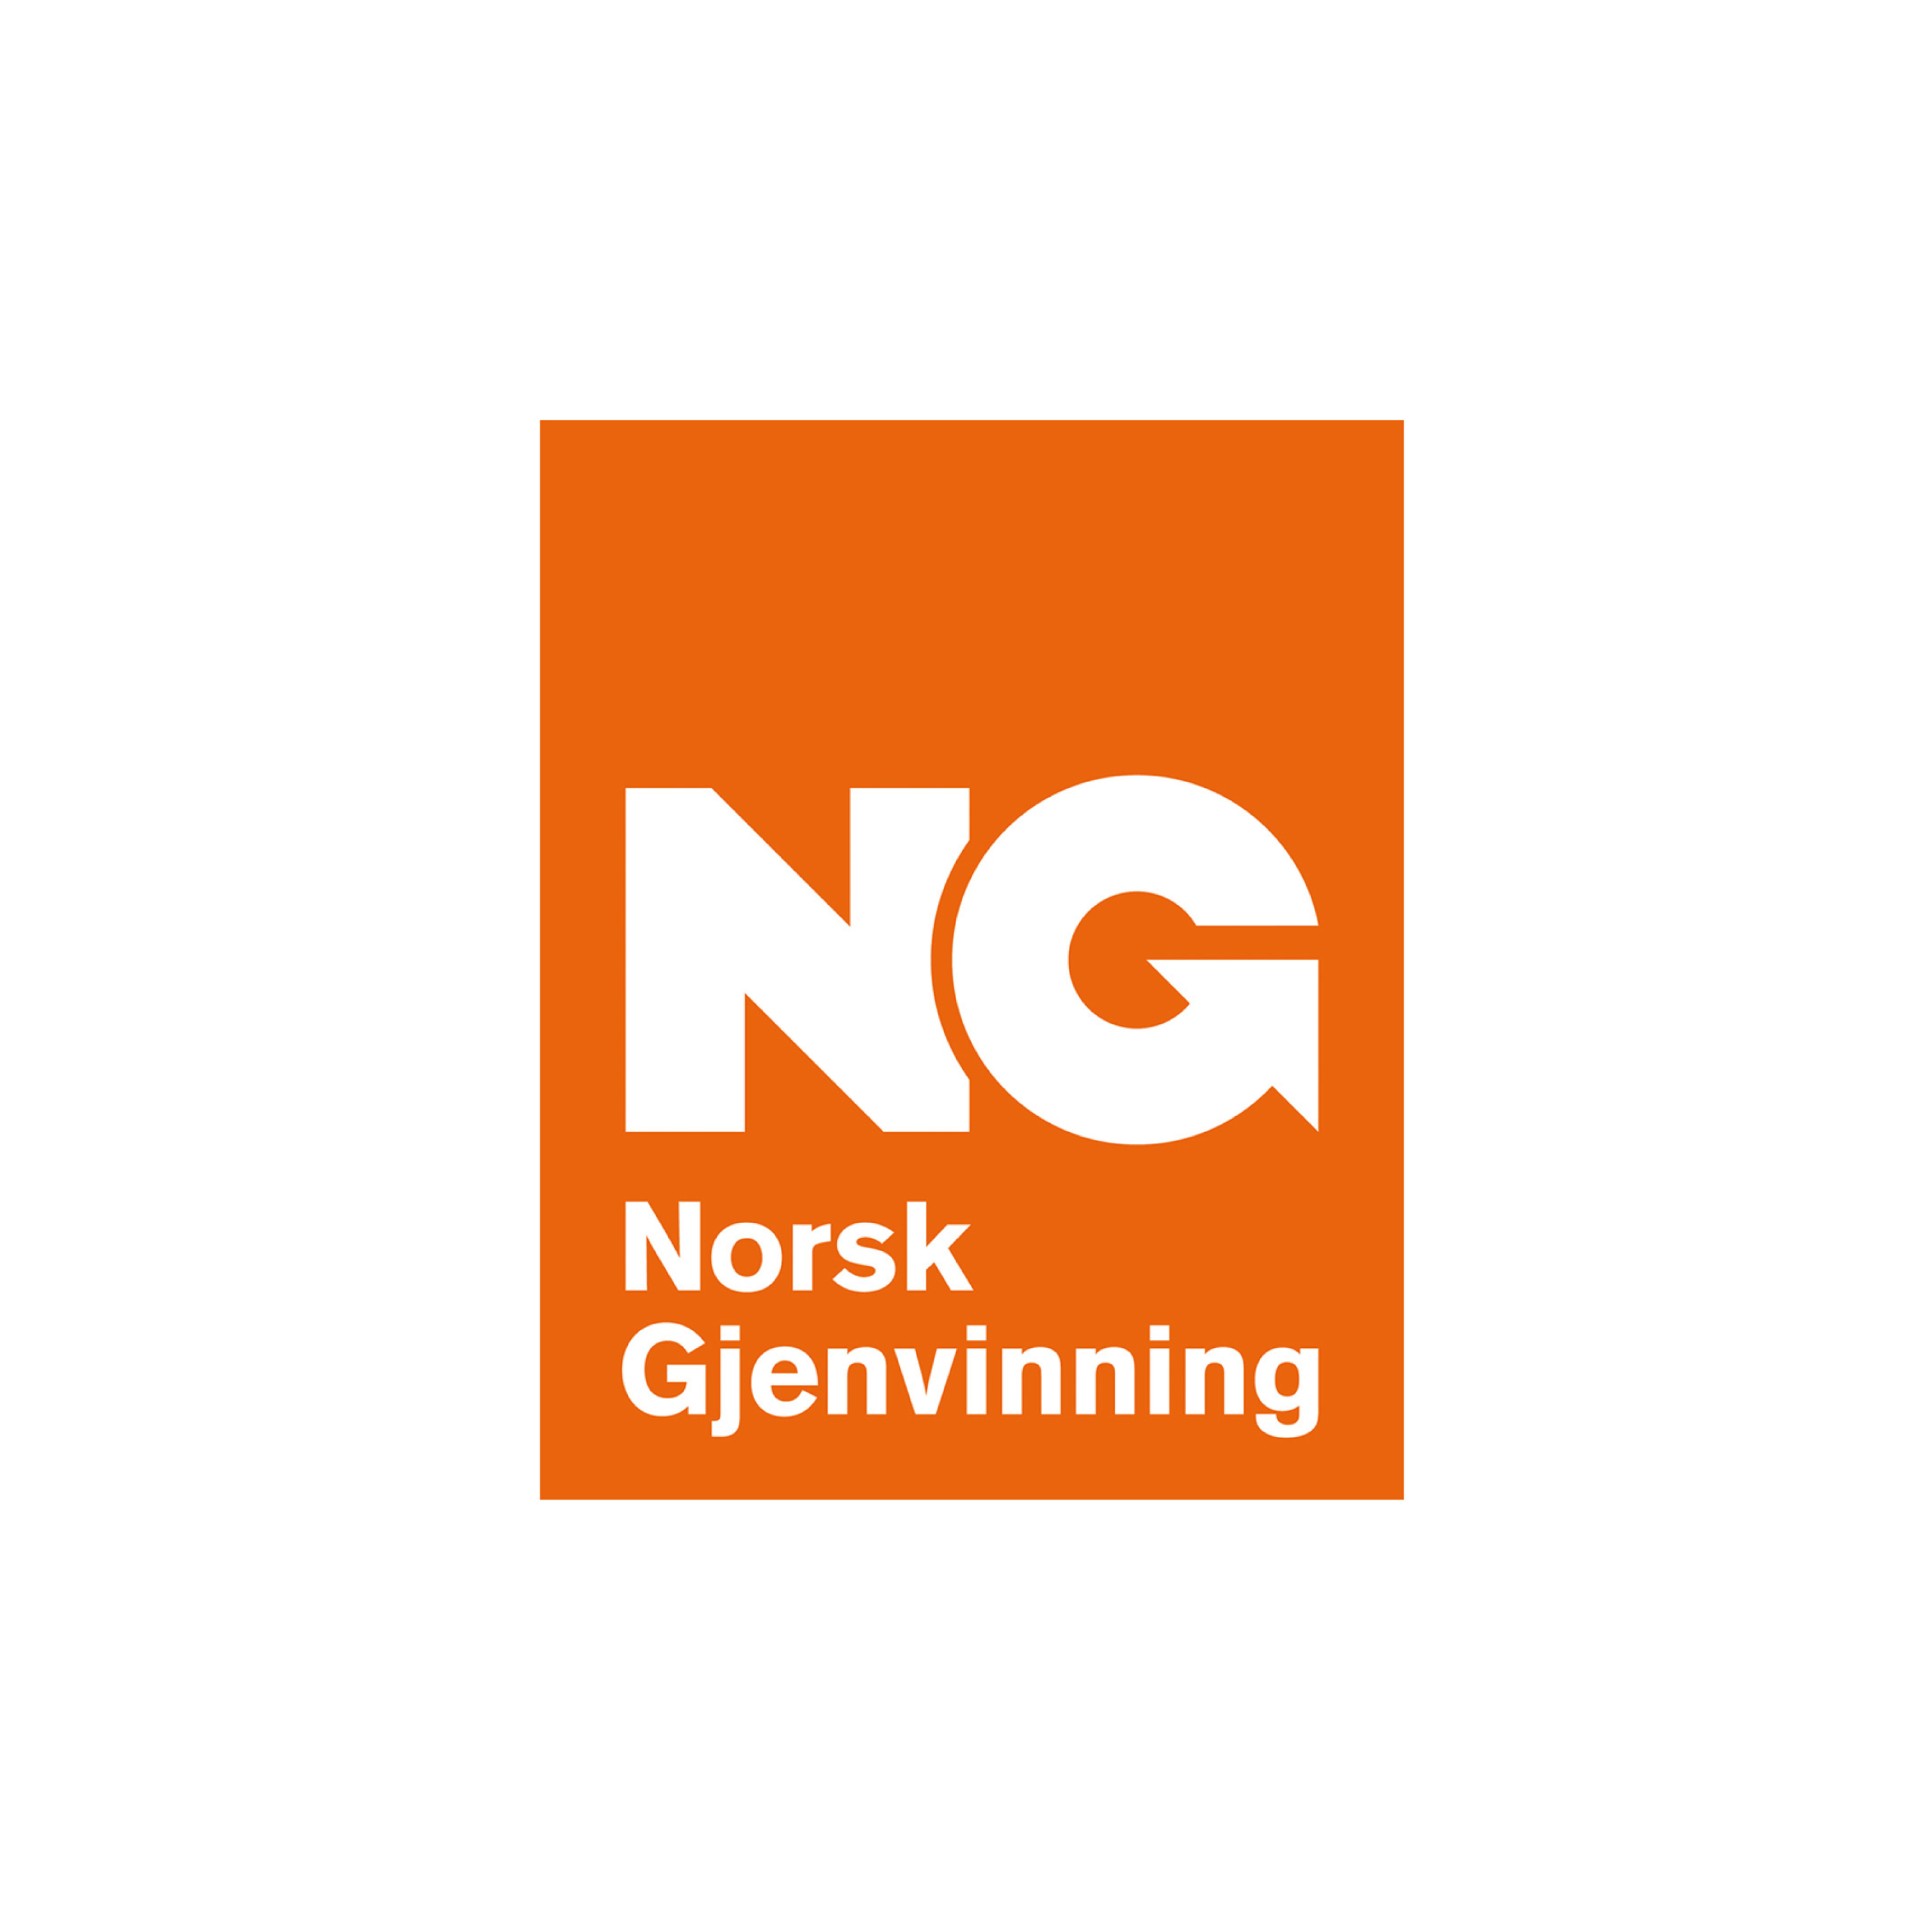 Norsk Gjenvinning